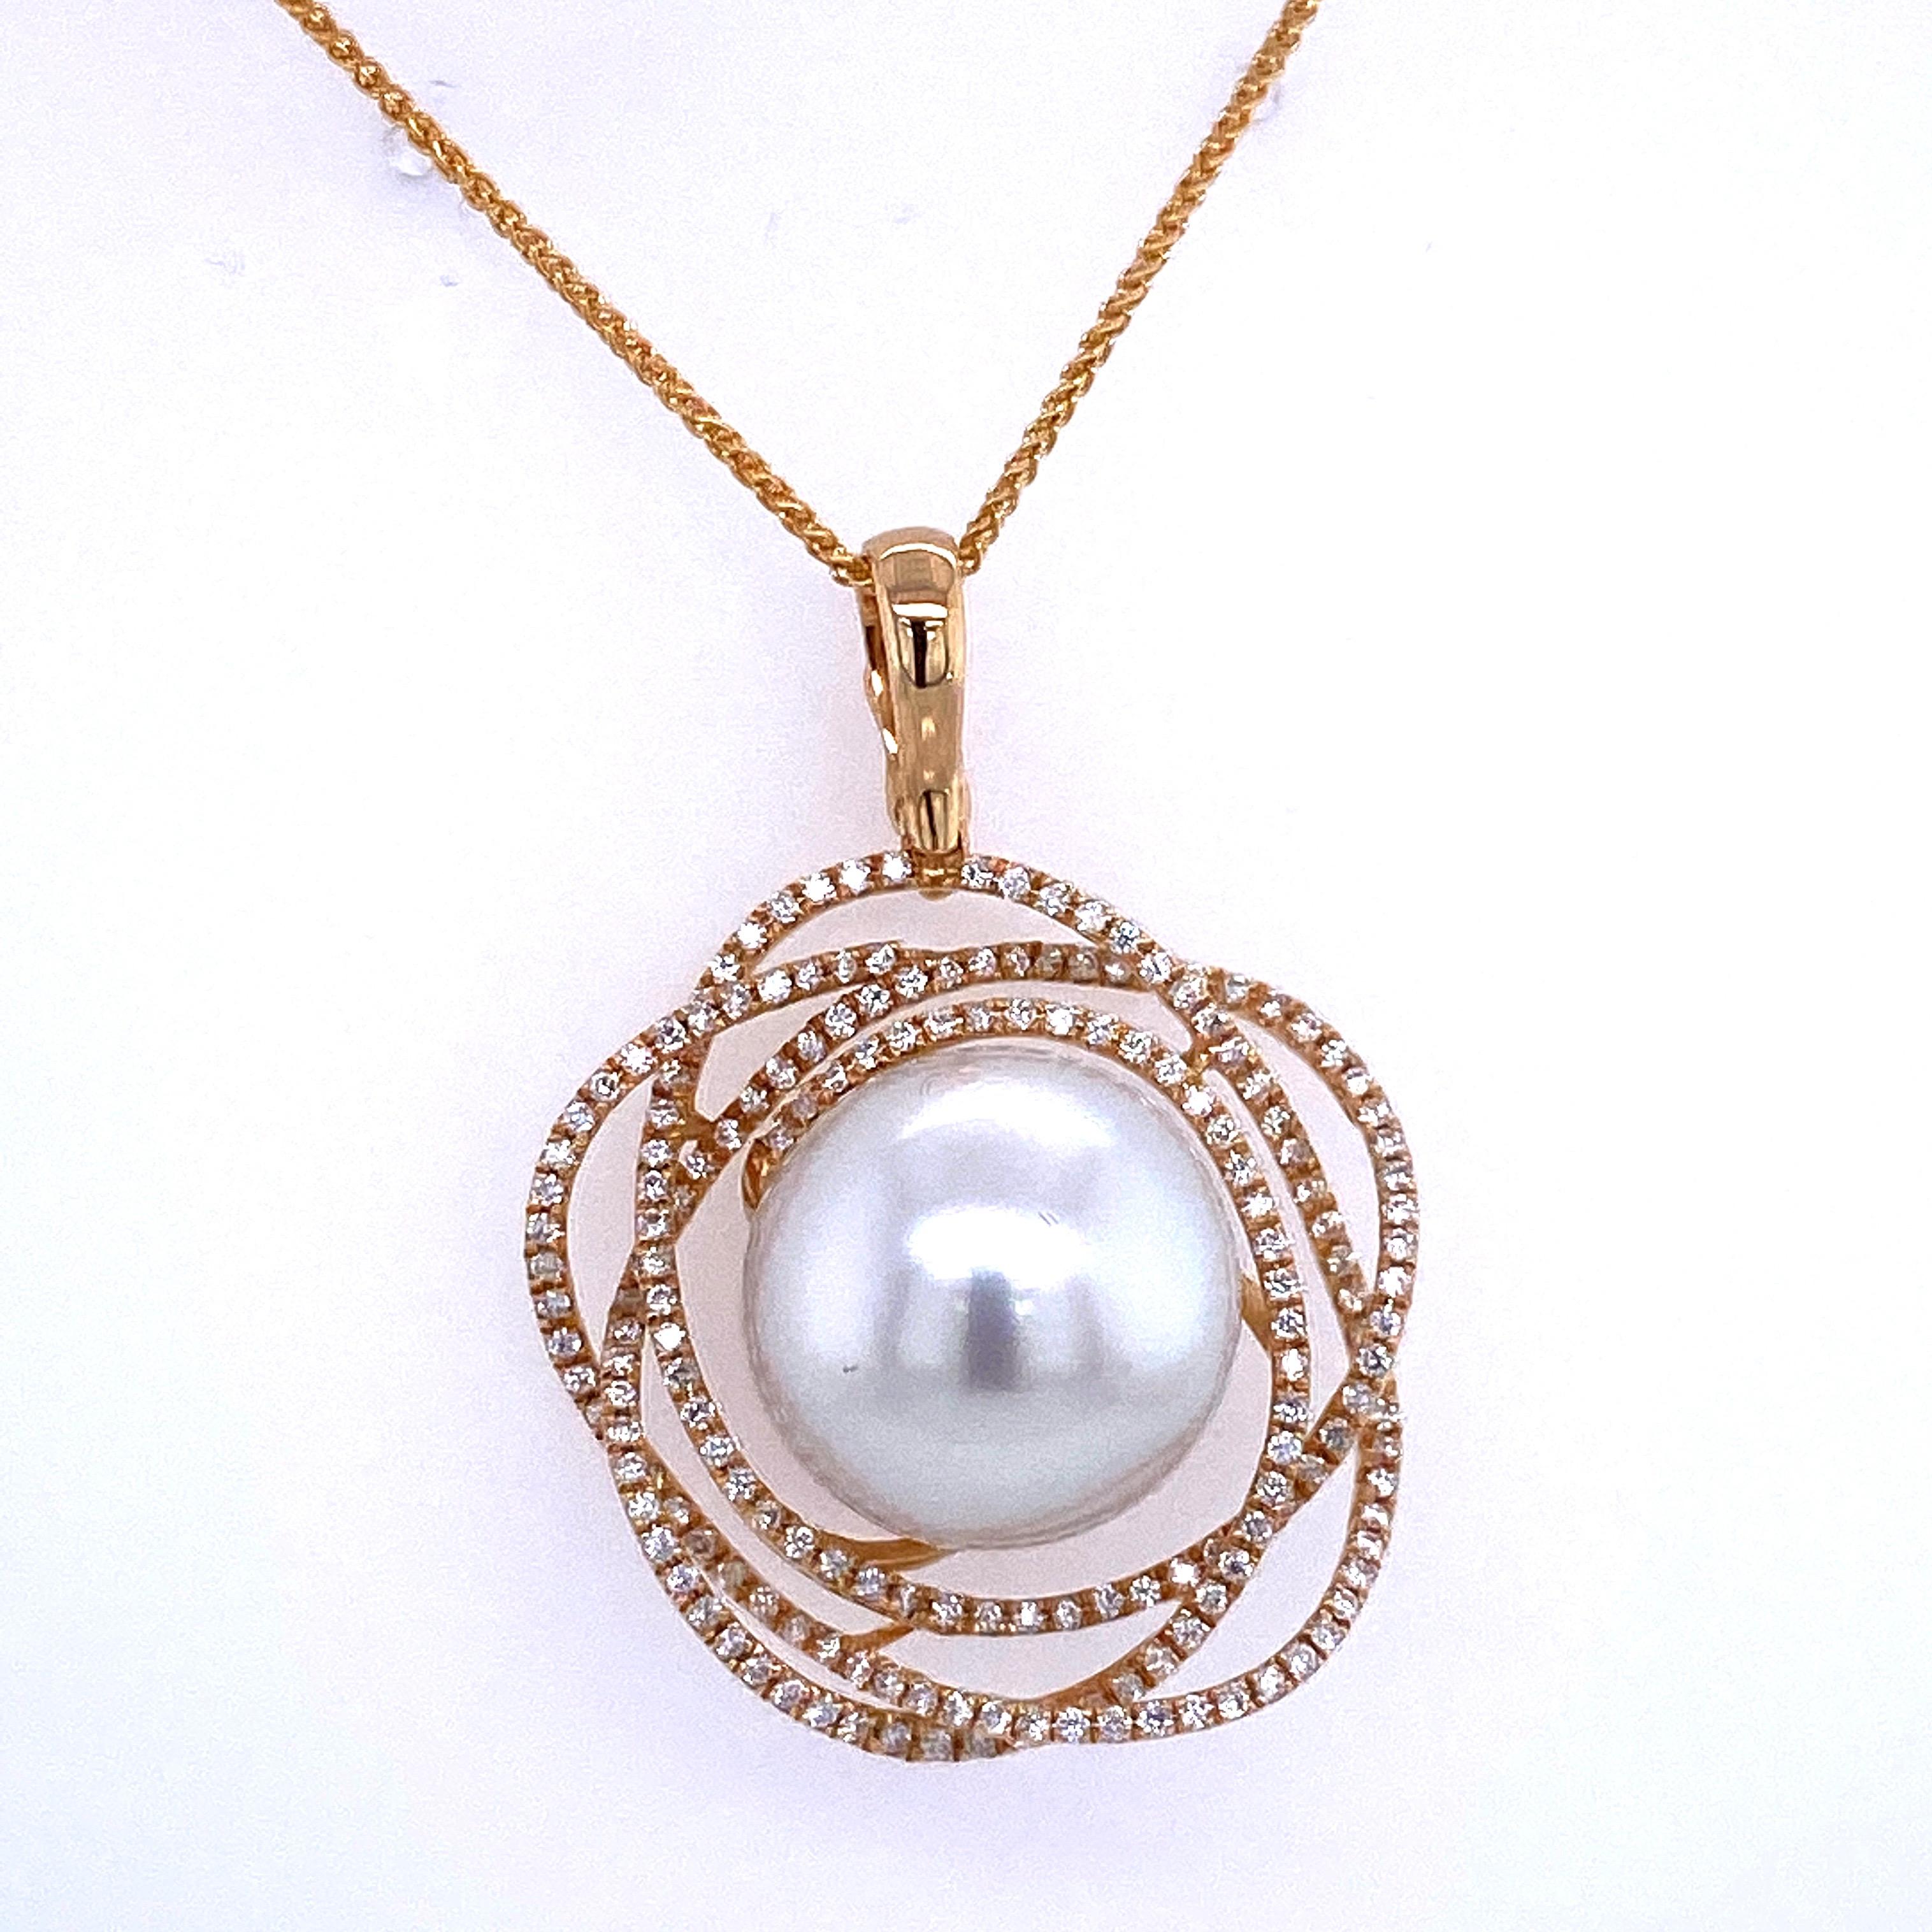 anhänger aus 18 Karat Gelbgold mit einer 13-14 mm großen Südseeperle, flankiert von 186 runden Brillanten mit einem Gewicht von 0,68 Karat.
Farbe G-H
Klarheit SI

Die Perle kann auf Wunsch in eine rosa, weiße oder Tahiti-Perle geändert werden.